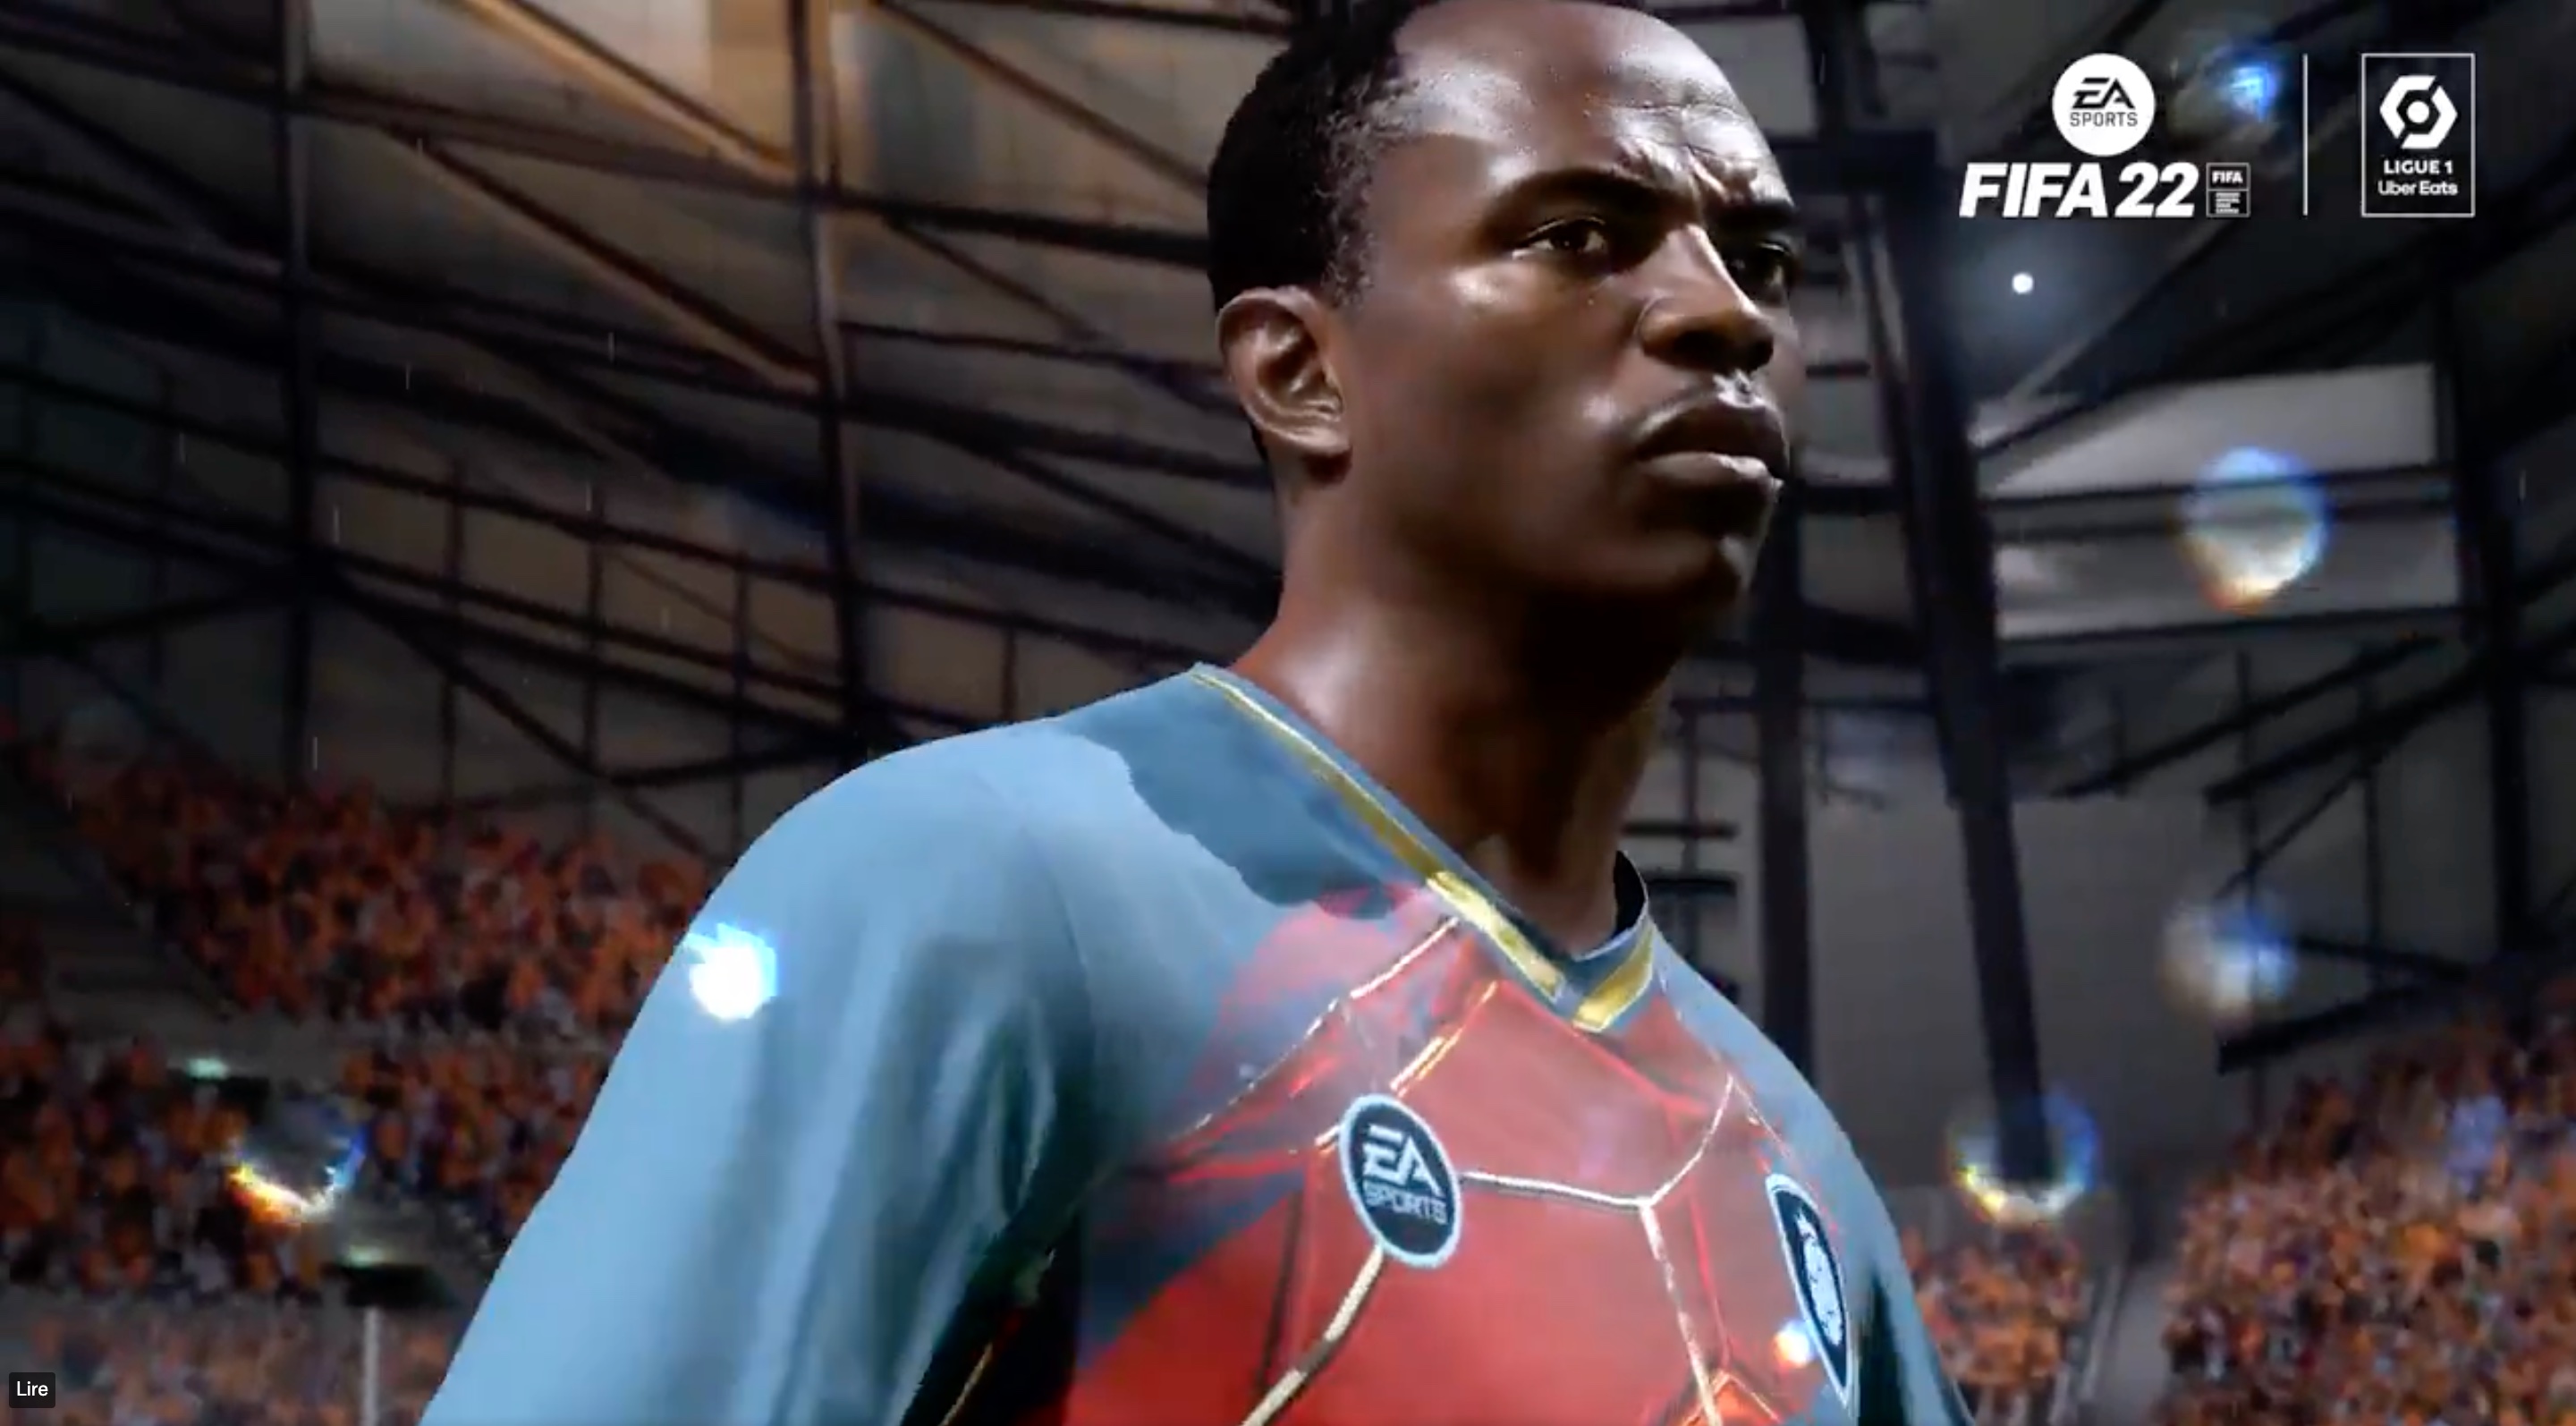 Les premières images de l'OM sur FIFA 22 (Abedi Pelé en mode FUT)mode